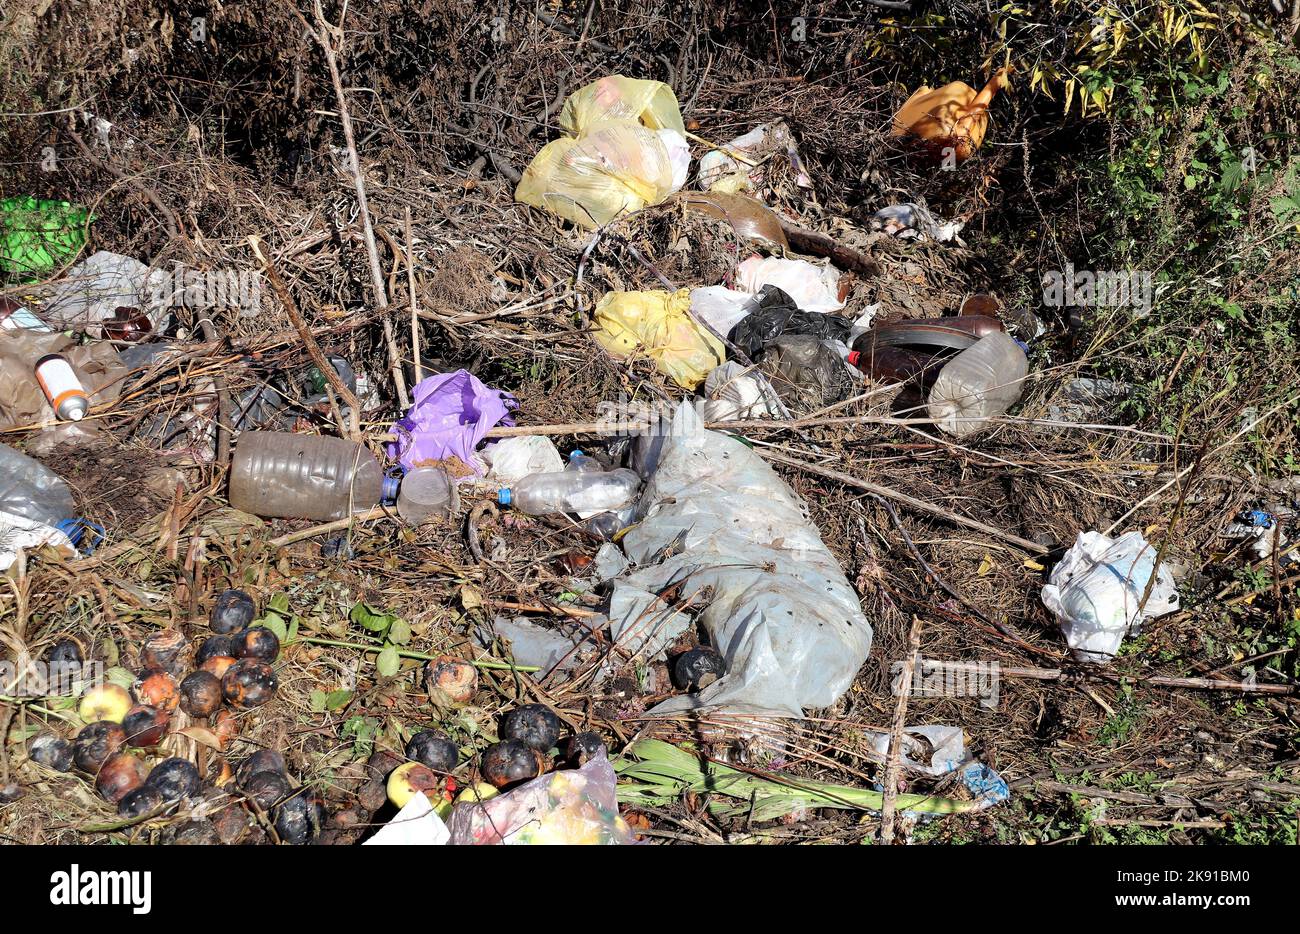 Contaminación del suelo con bolsas y botellas de plástico. Basura plástica en el bosque. Problema ecológico y contaminación ambiental Foto de stock